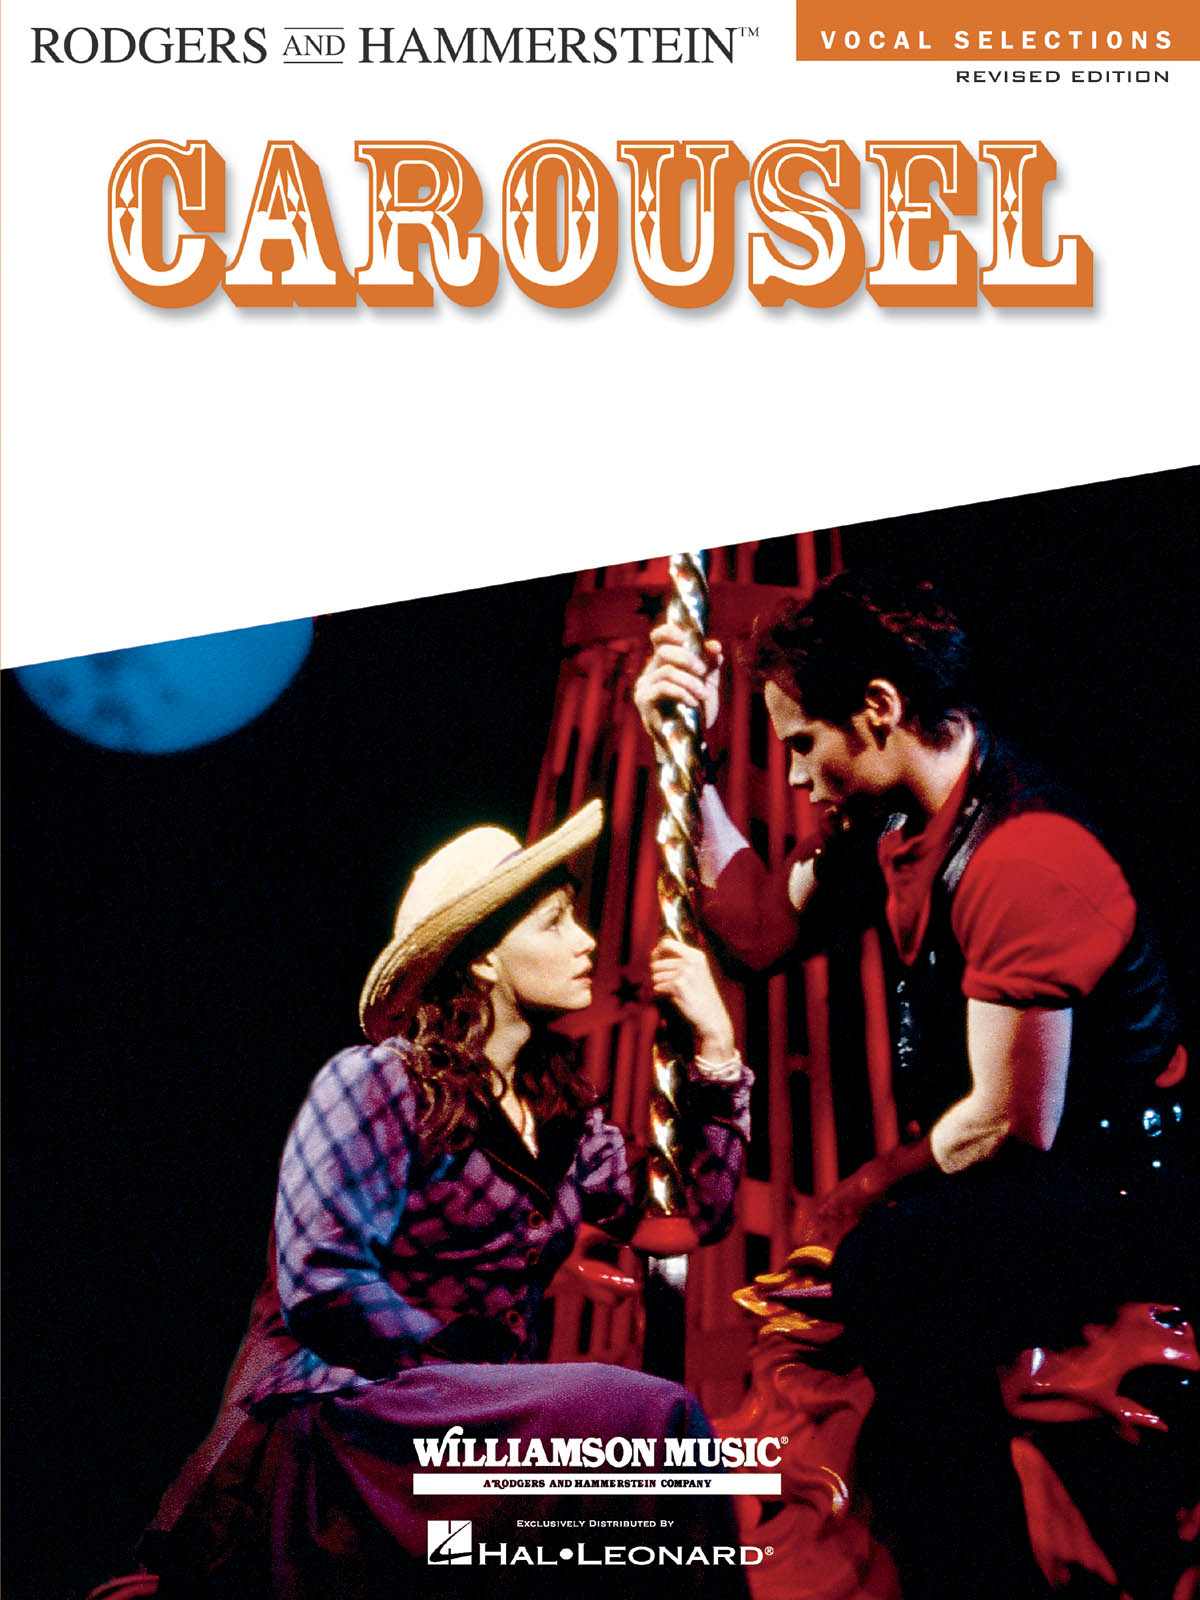 Carousel - Vocal Selections - Vocal Selections - písně pro zpěv, klavír s akordy pro kytaru